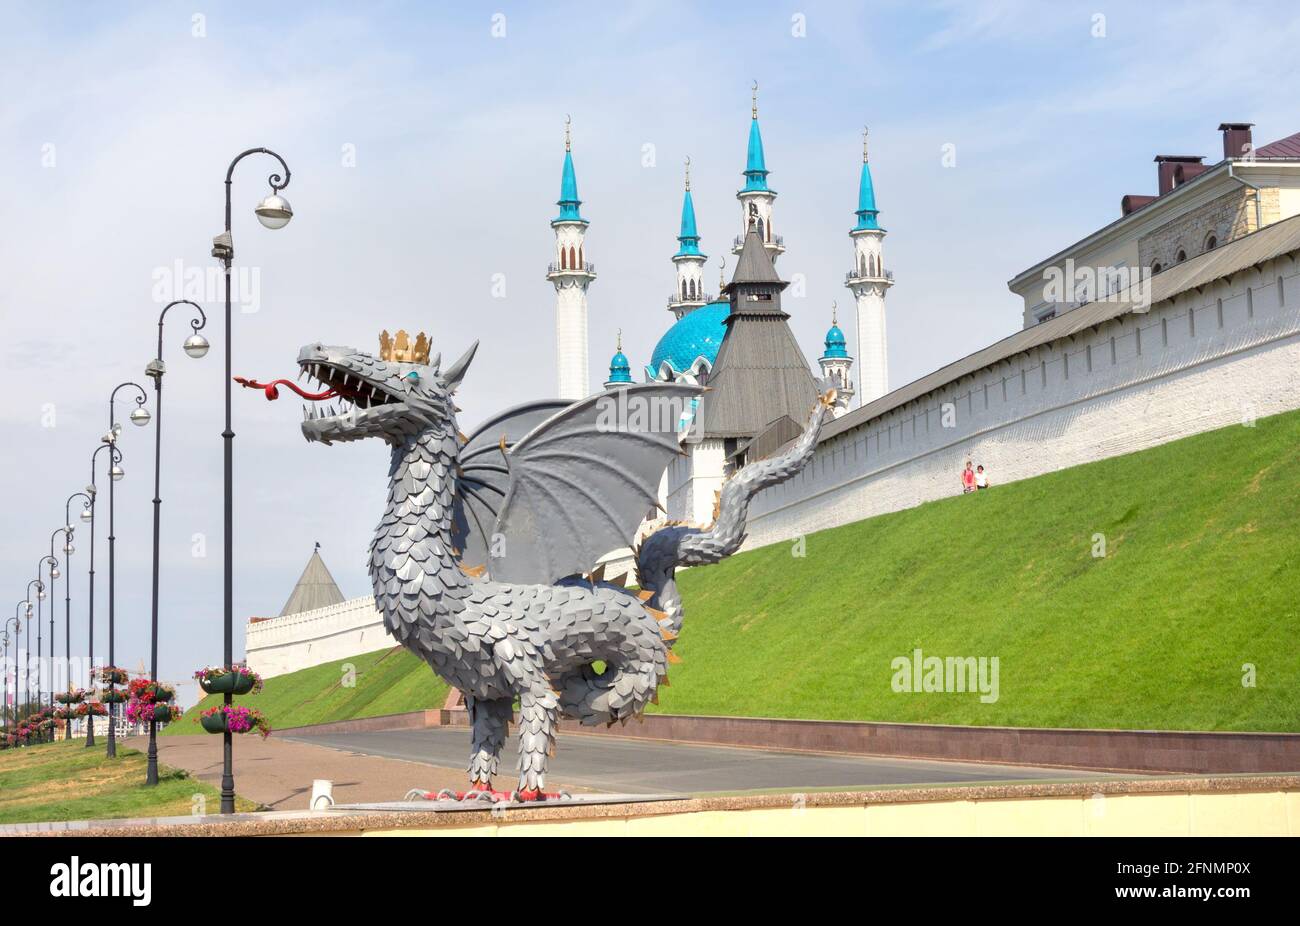 Kazan, Russie - 25 août 2016 : sculpture métallique de Zilant, symbole officiel de Kazan, sur fond de la mosquée kazan du Kremlin de Kul Sharif, Th Banque D'Images